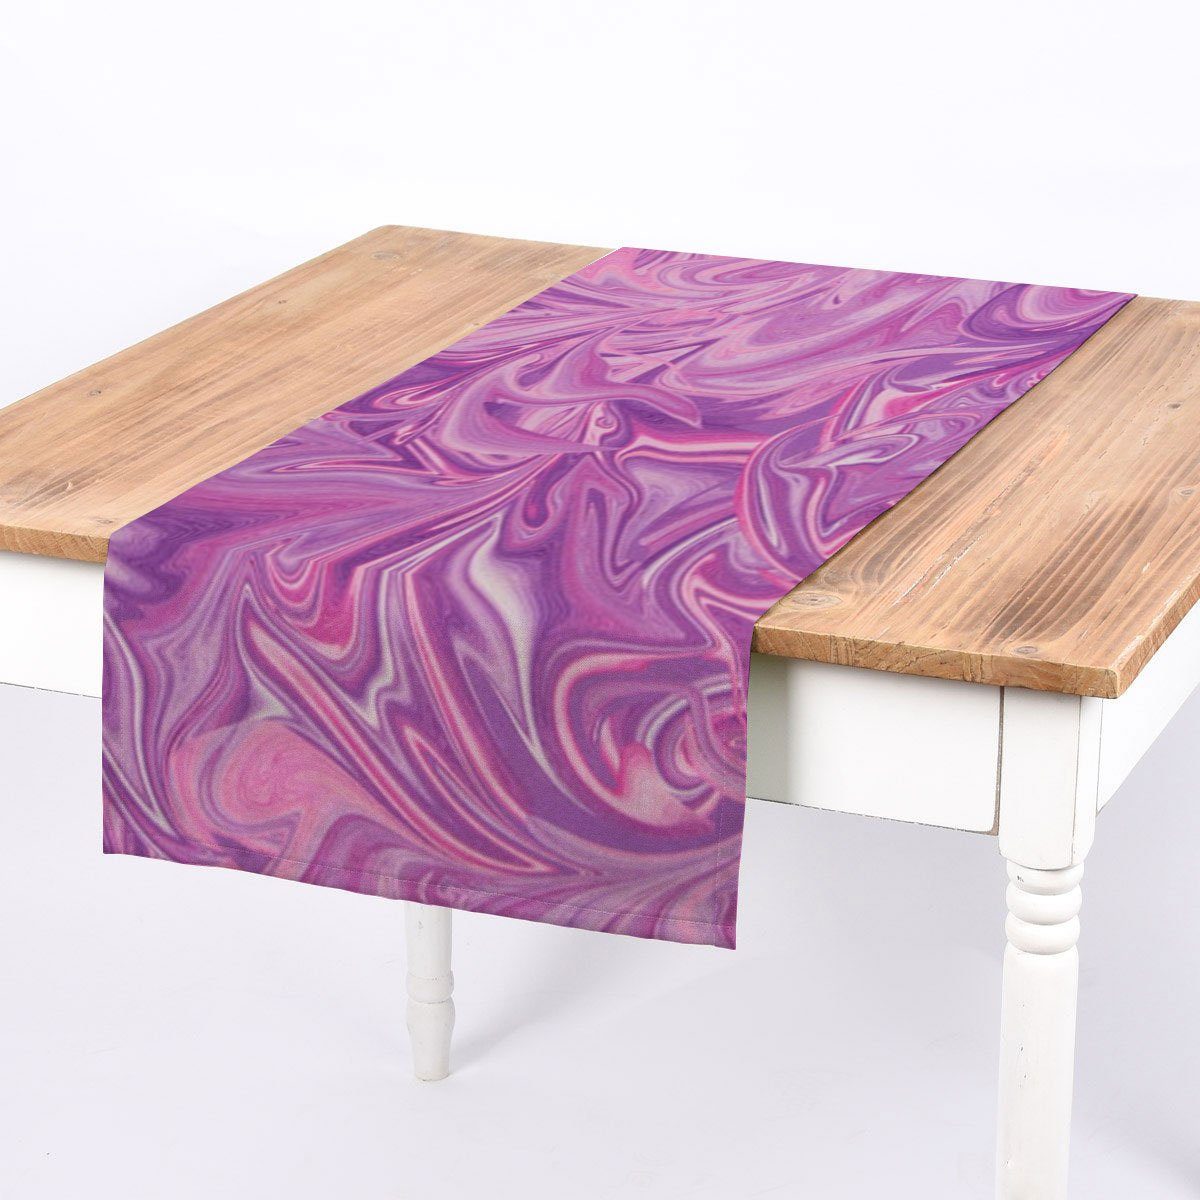 SCHÖNER LEBEN. Tischläufer SCHÖNER LEBEN. Tischläufer Digitaldruck Retro Batik lila pink, Digitaldruck